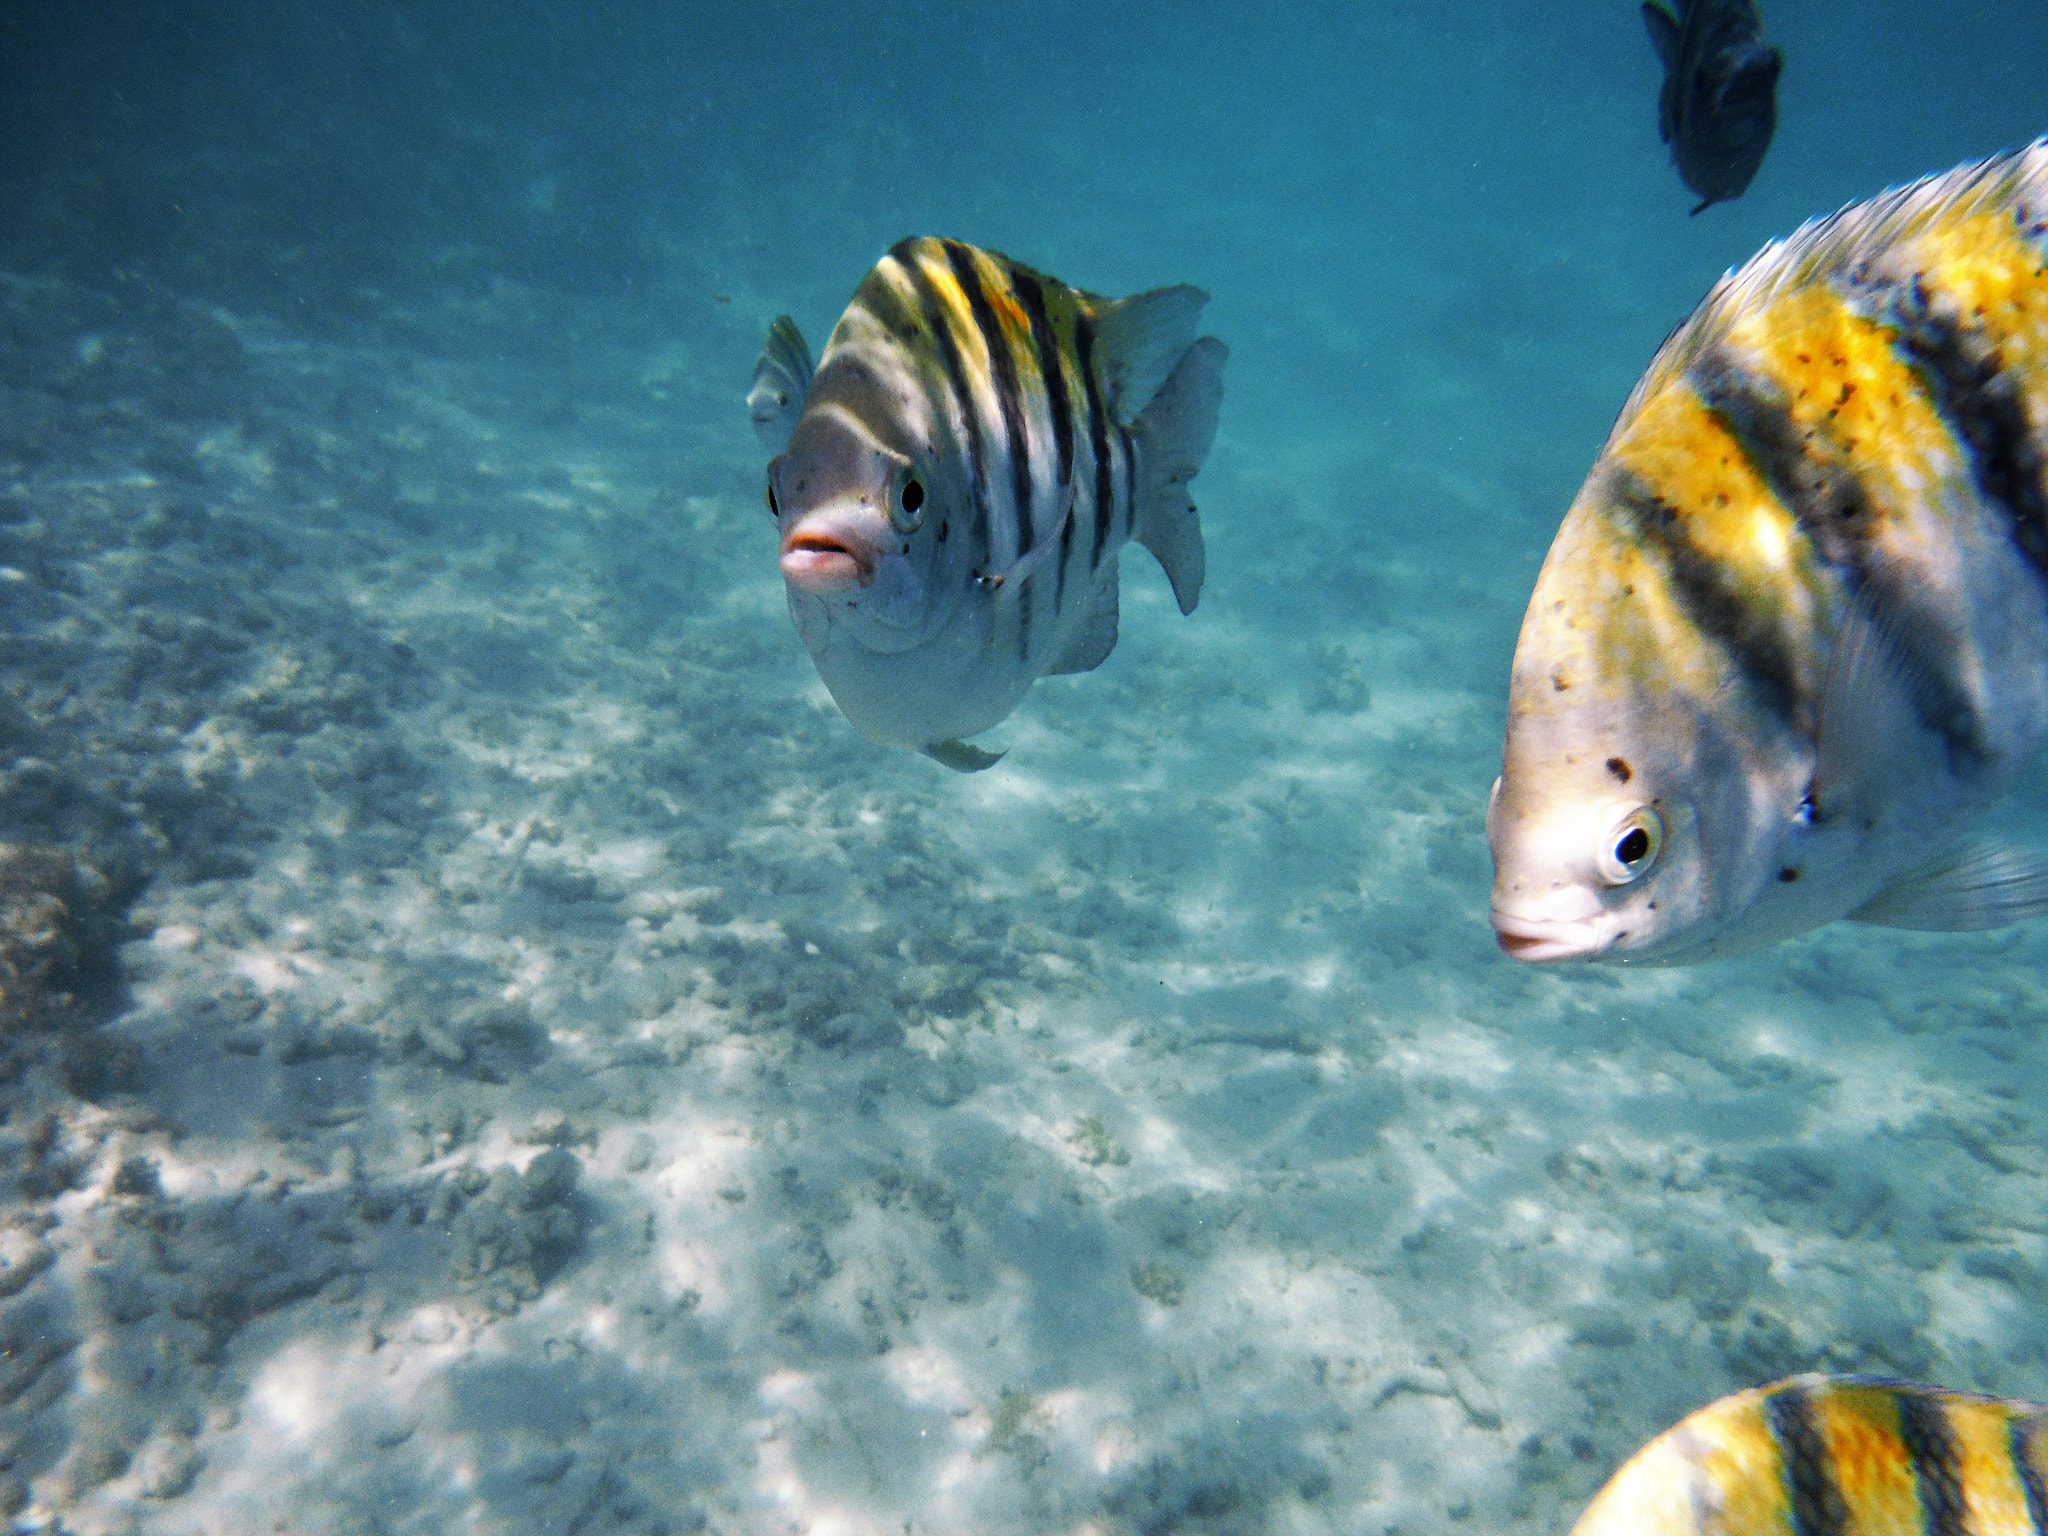 Fujifilm FinePix XP60 sample photo. Fish in the sea photography